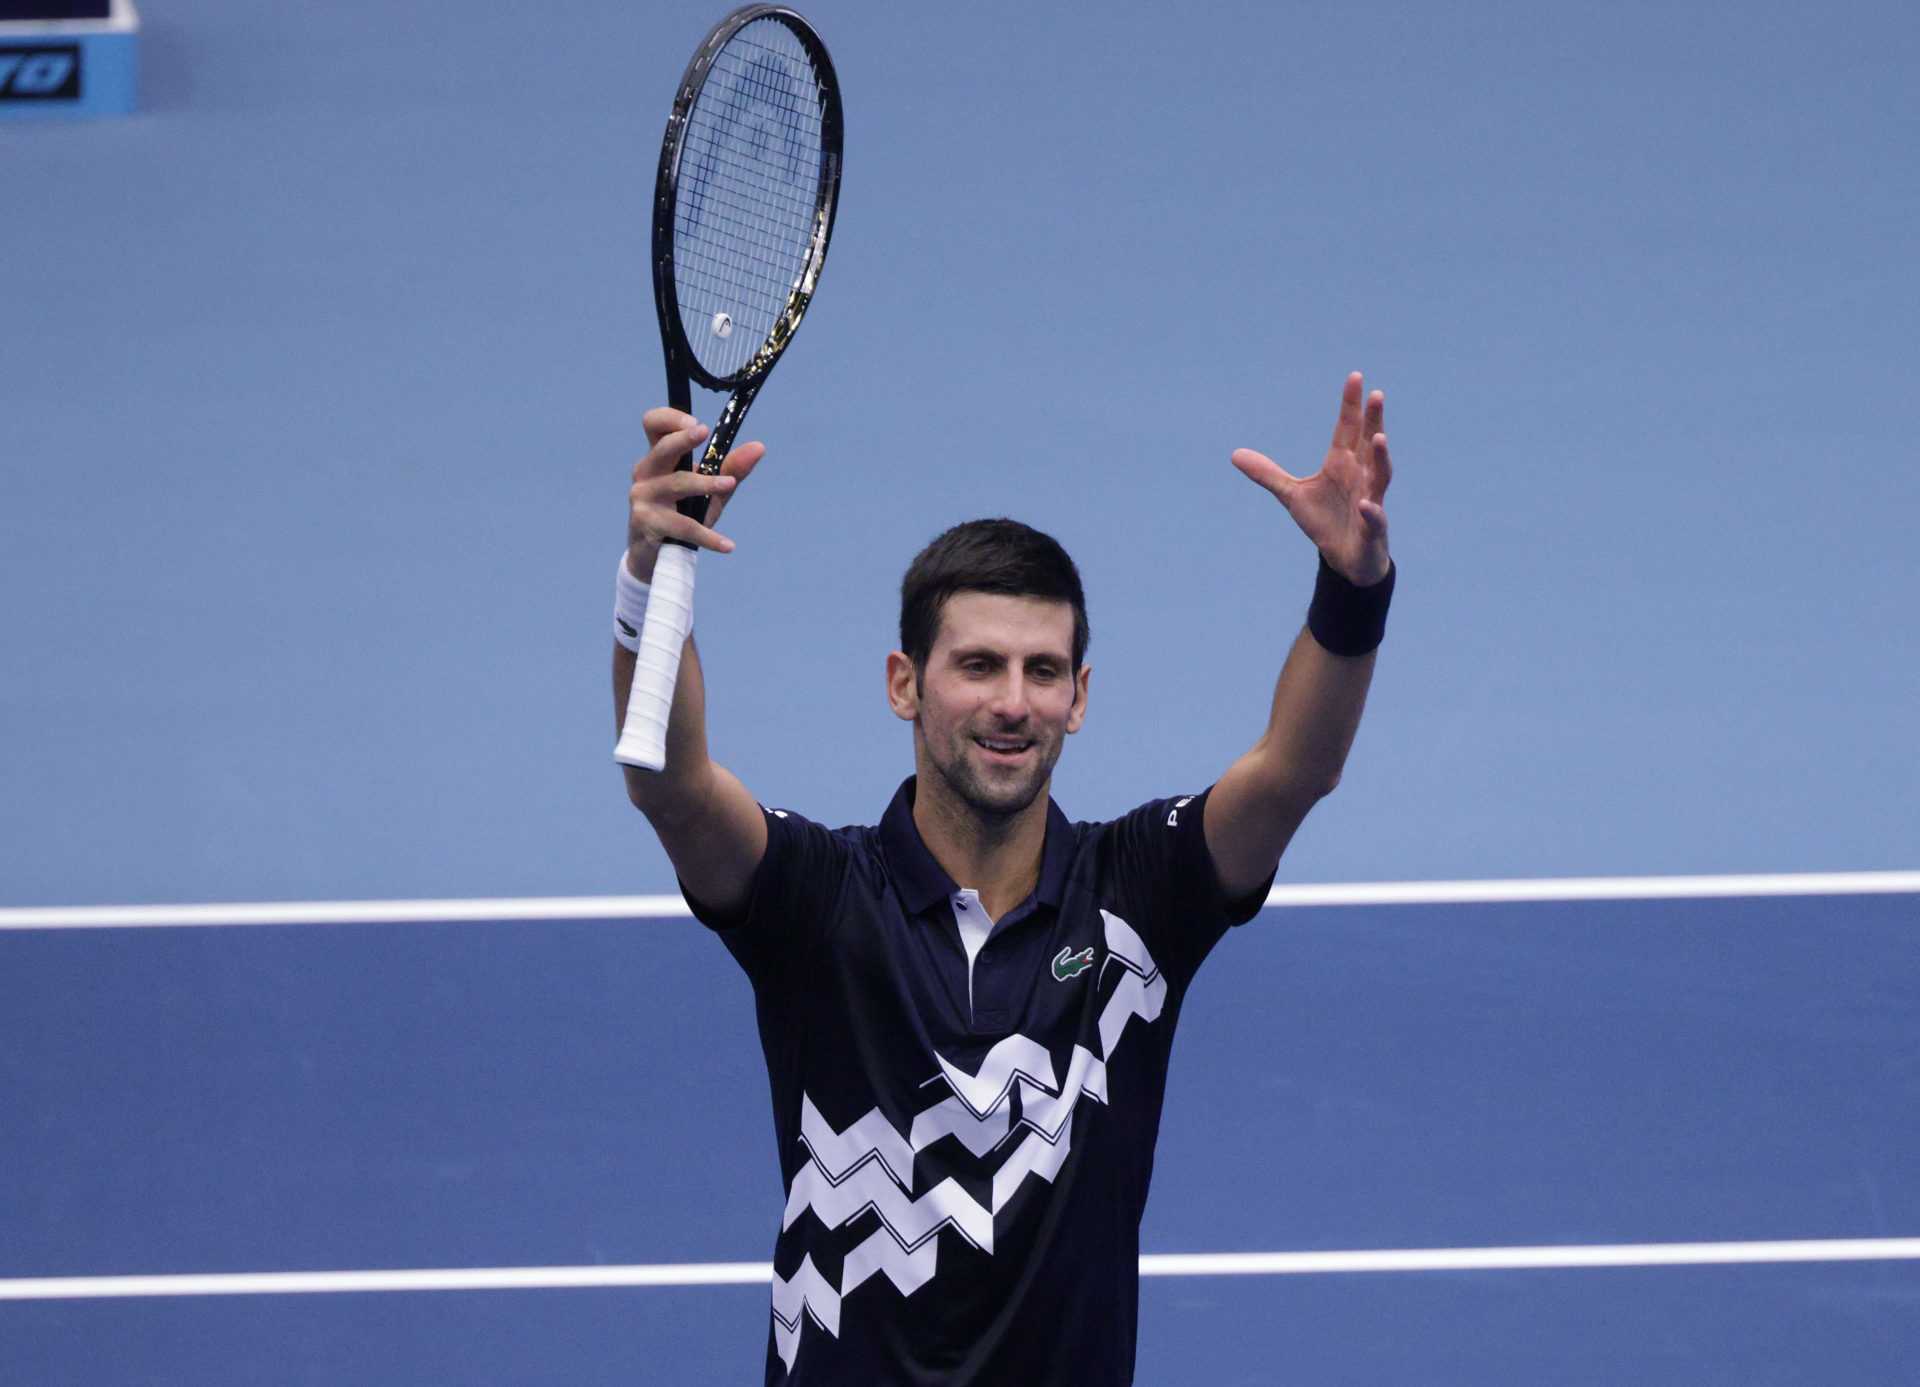 Le ministre serbe des Sports rend hommage à Novak Djokovic pour avoir égalé le record d'élite de Pete Sampras